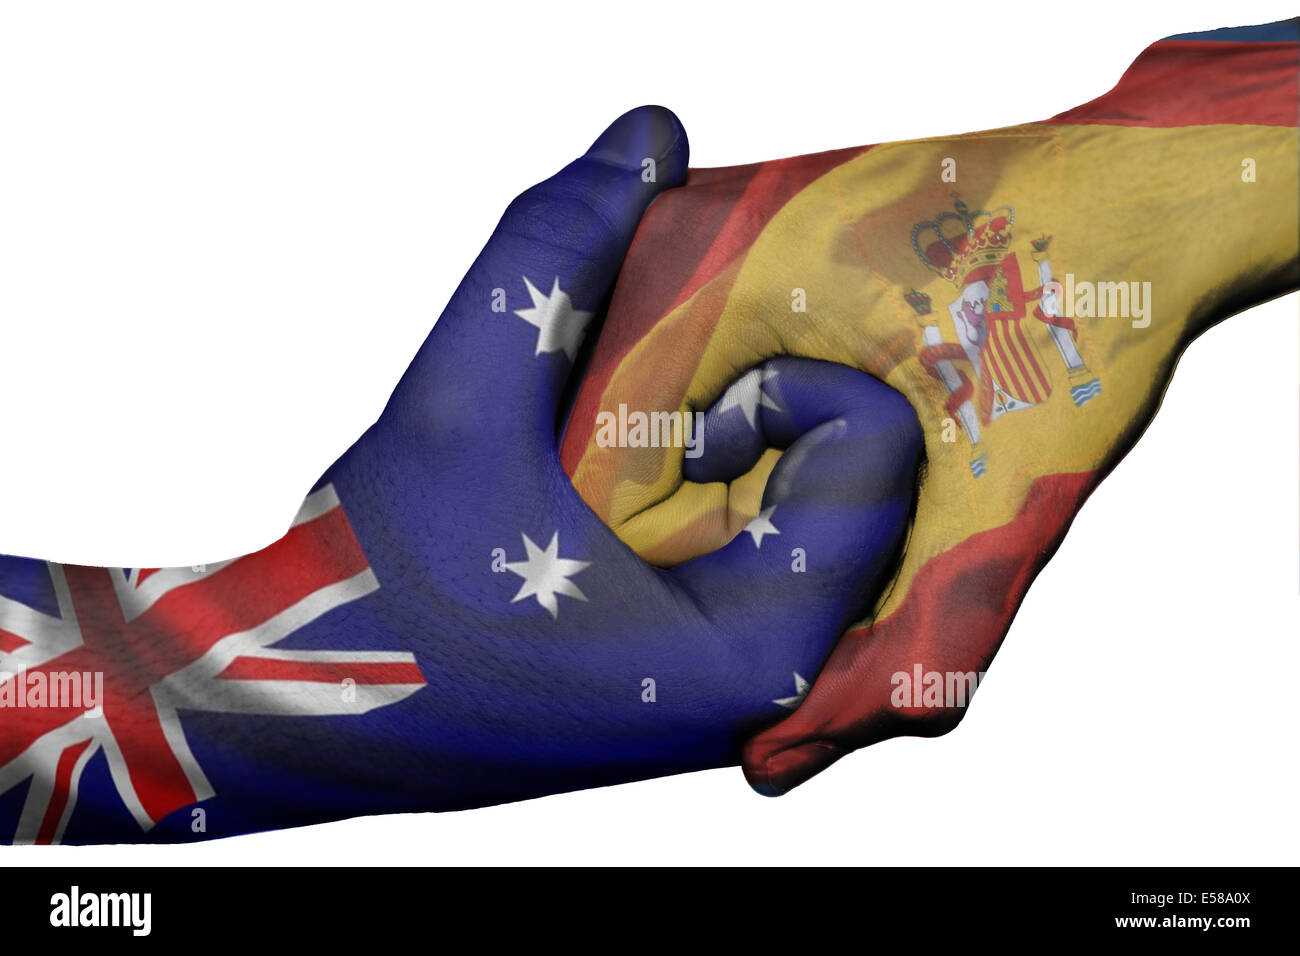 Handshake diplomatiche tra paesi: bandiere di Australia e Spagna sovradipinta le due mani Foto Stock